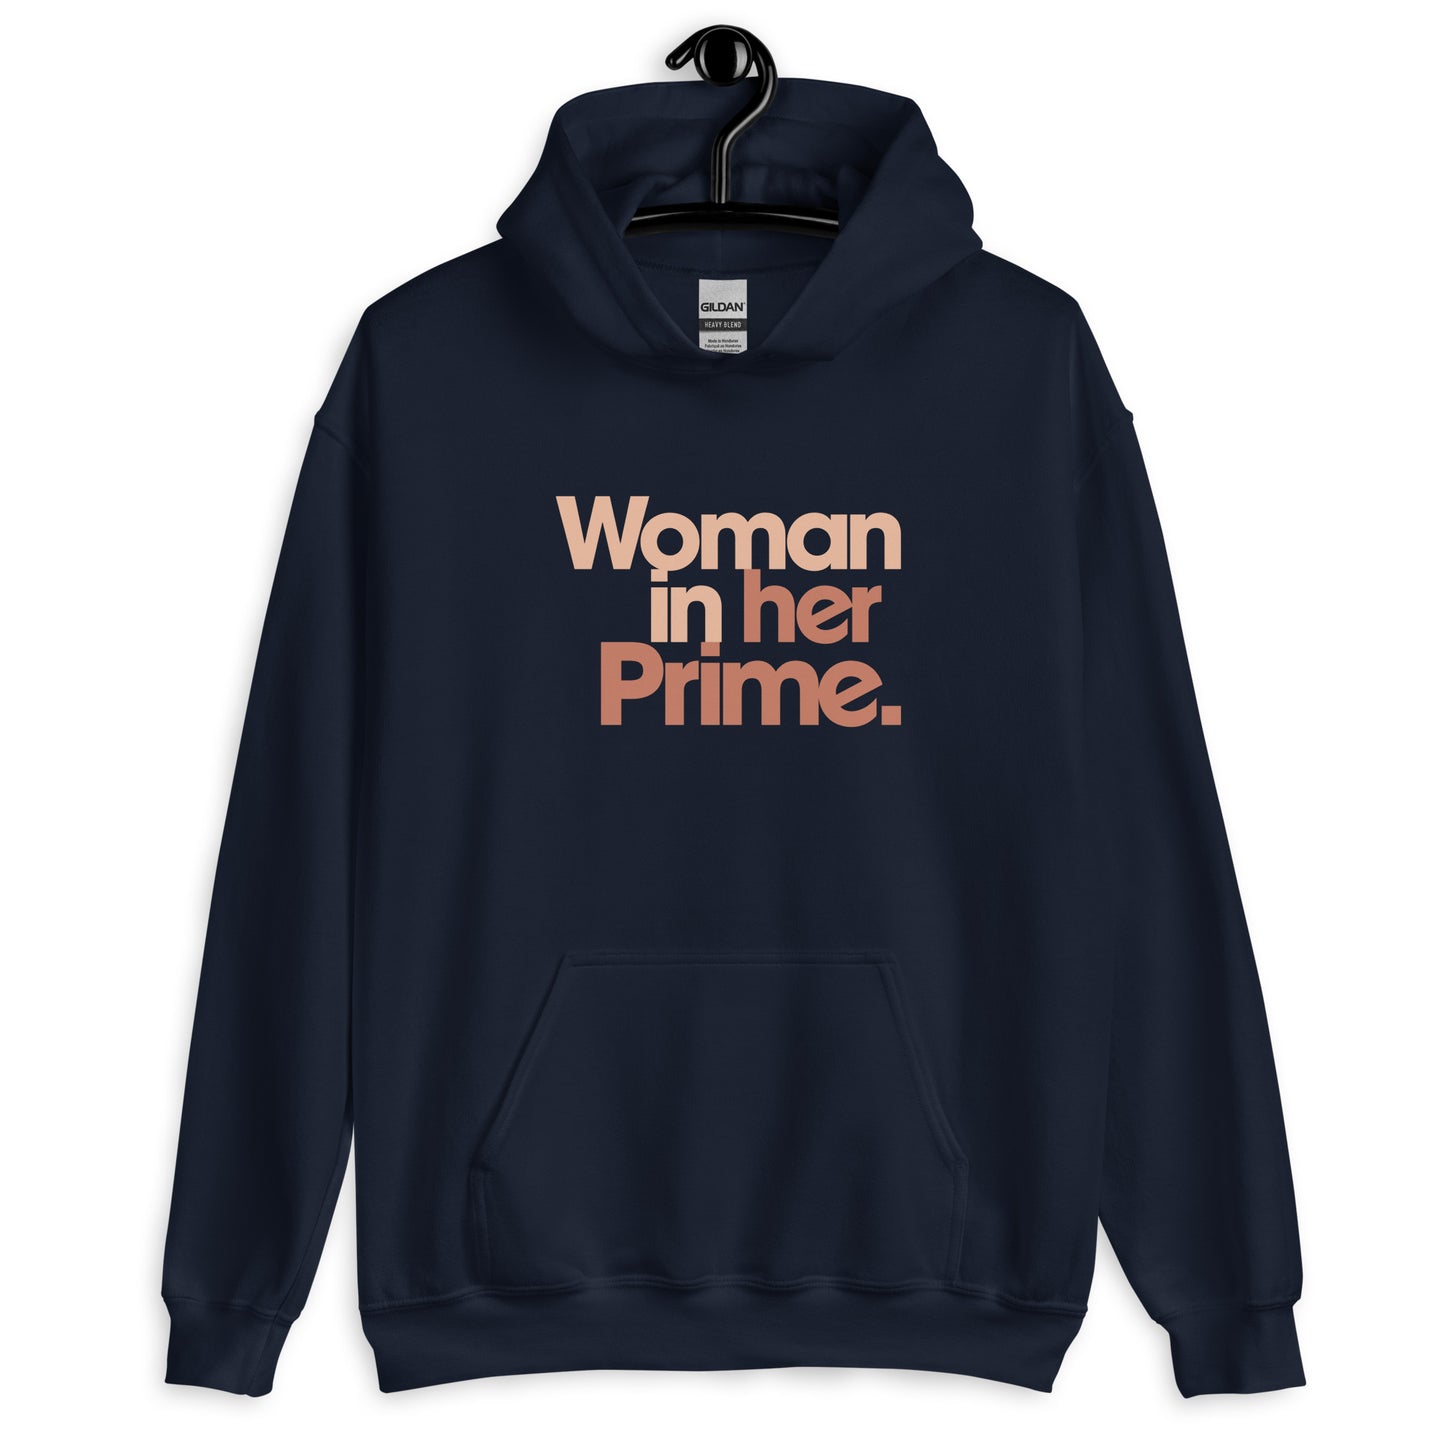 Woman in her Prime - Hooded Sweatshirt